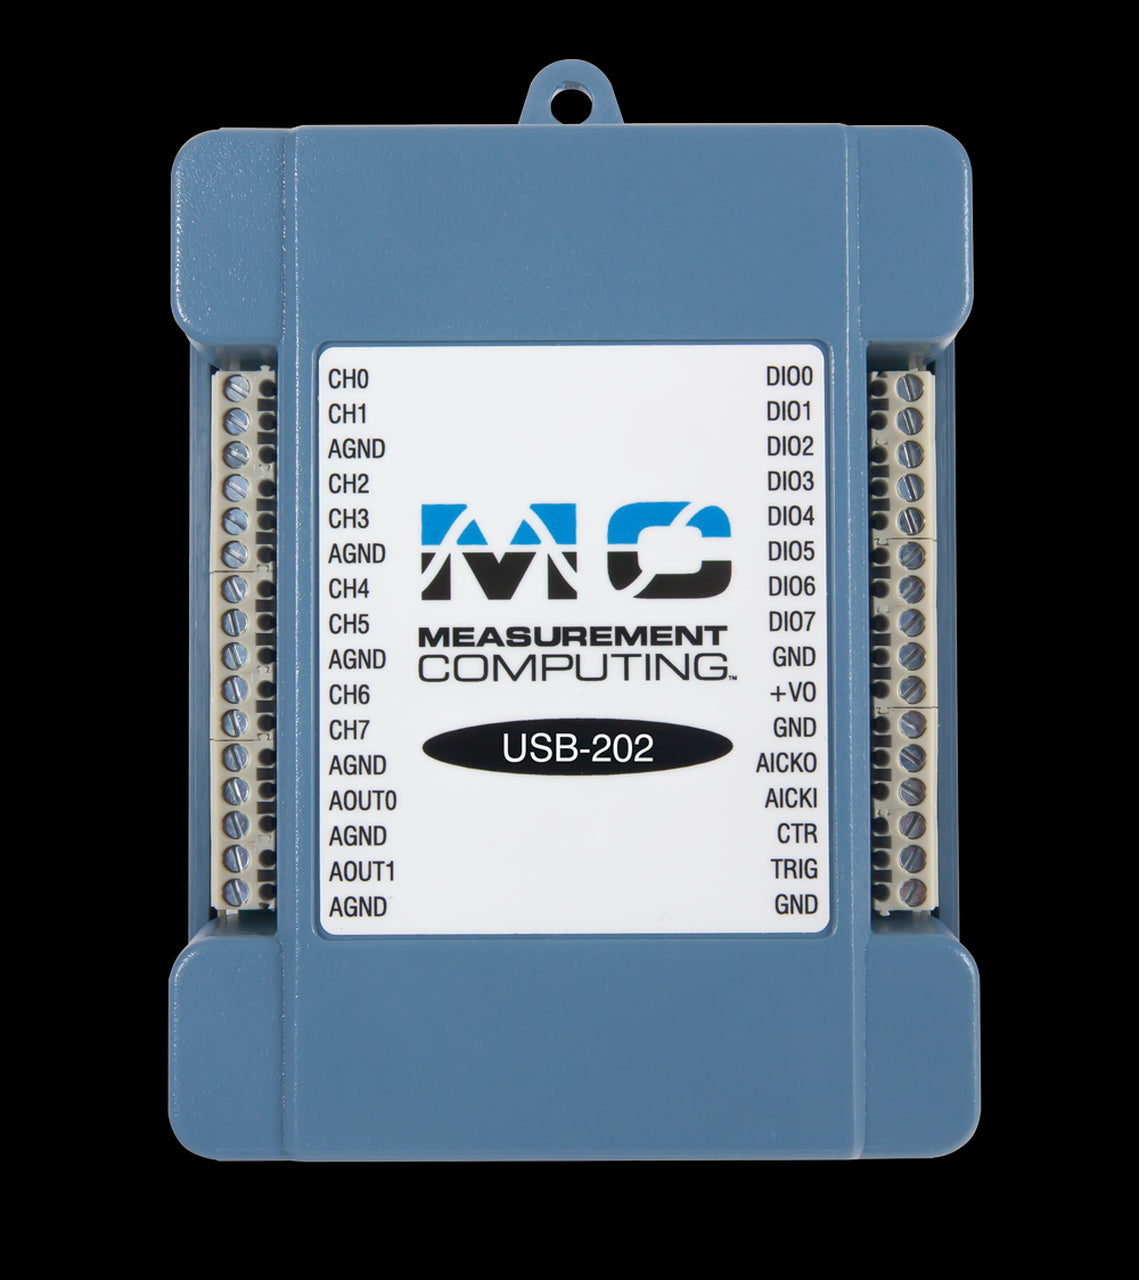 MCC USB-202 12-bit, 100 kS/s Single Gain Multifunction USB DAQ Device